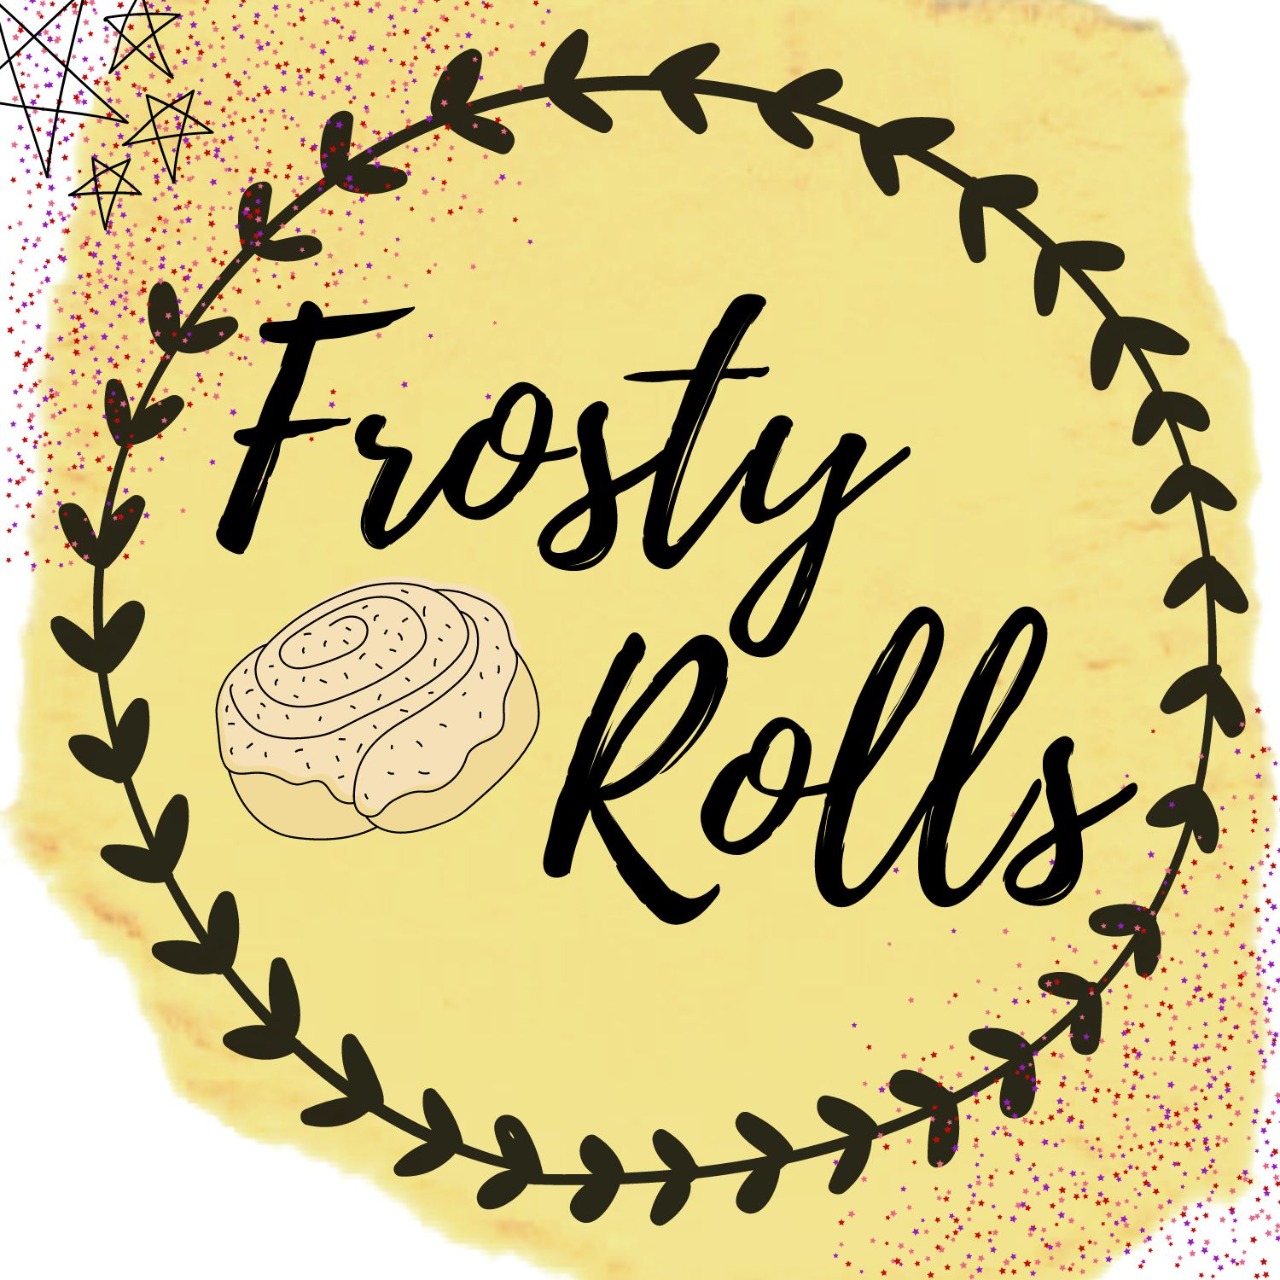 Frosty Rolls